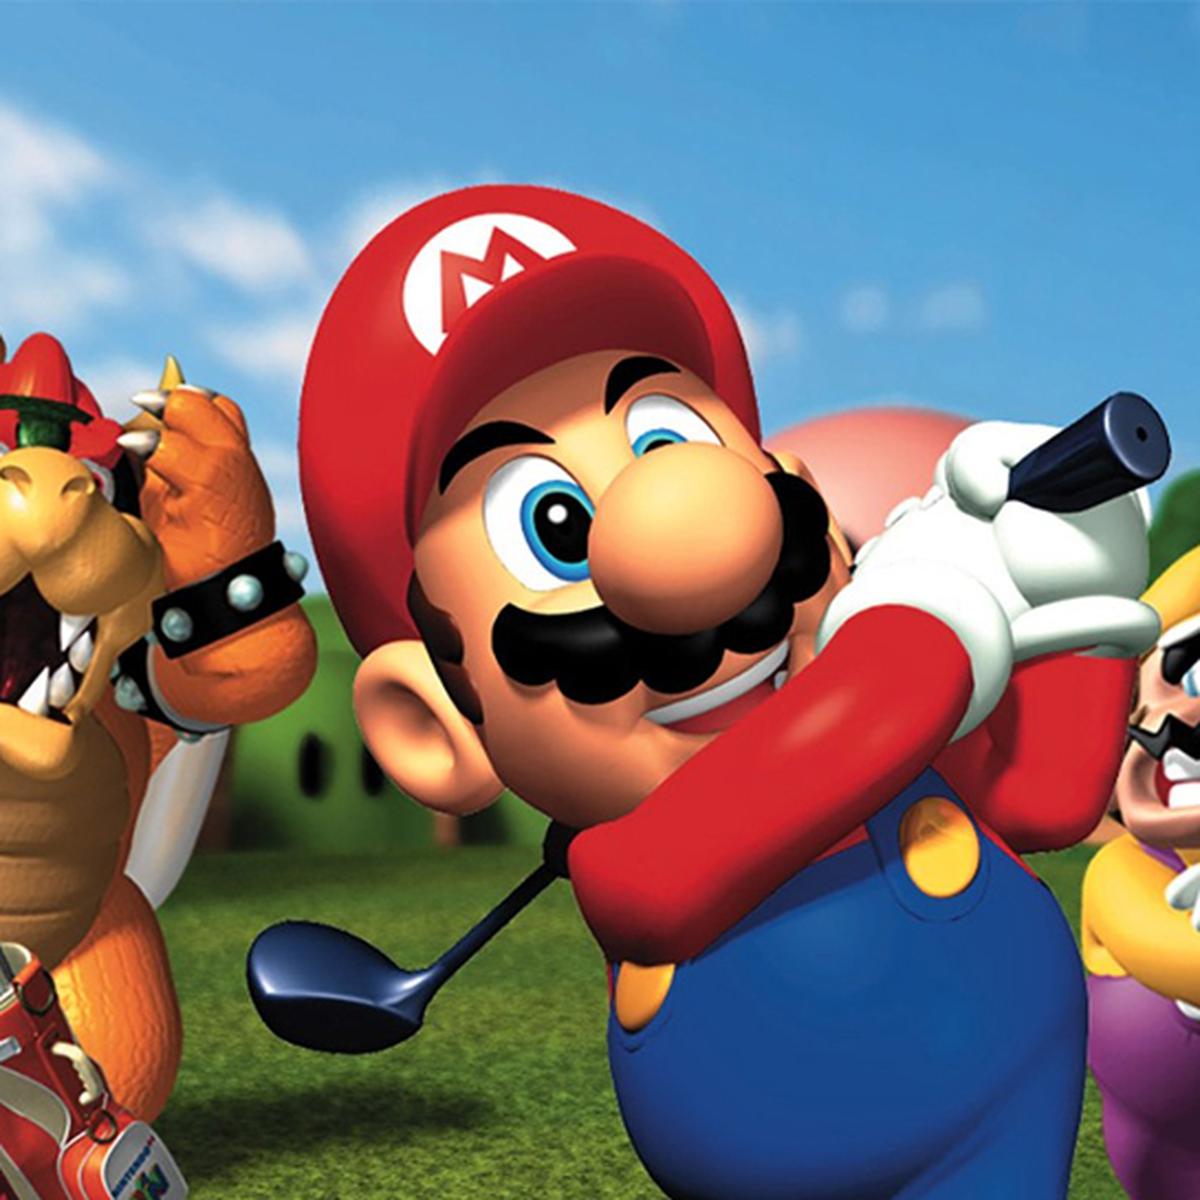 tratar con alfiler cocina La próxima semana llegará 'Mario Golf' a Nintendo Switch [VIDEO] |  Videojuegos | Nintendo | Nintendo Switch | Mario Golf | VIDEOJUEGOS | PERU21